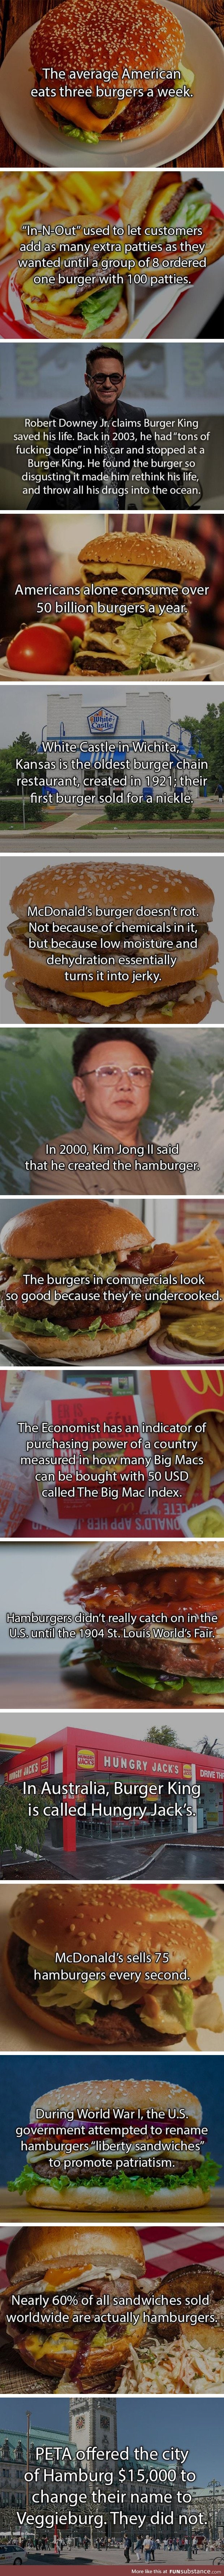 Hamburger facts